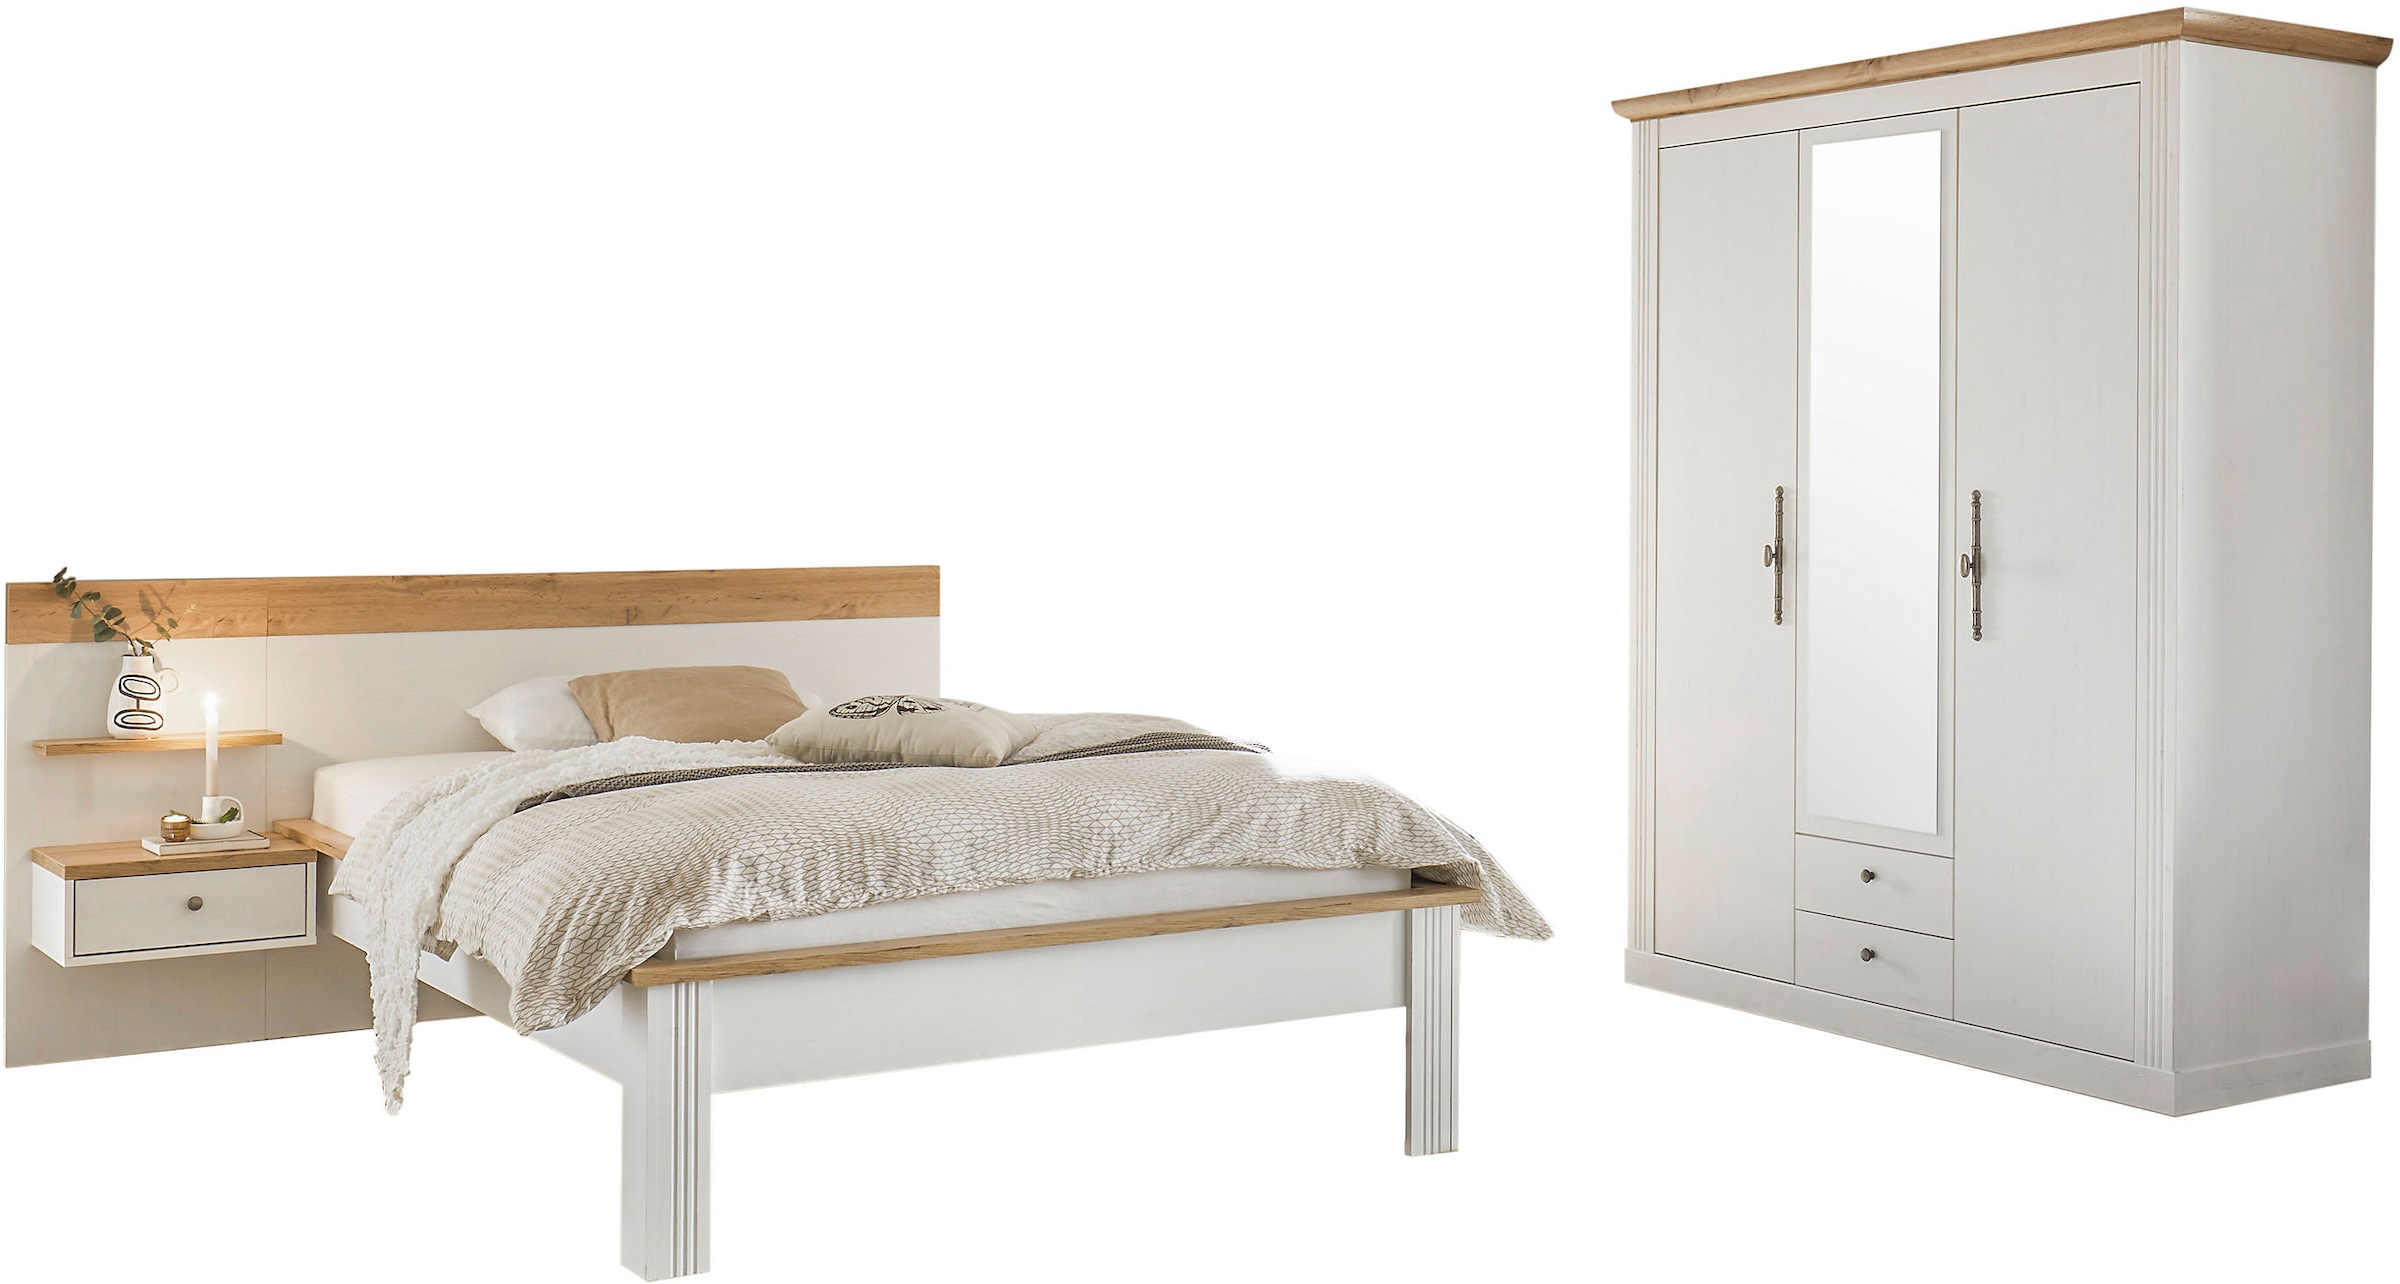 Schlafzimmer-Set »Westminster«, beinhaltet 1 Bett, Kleiderschrank 3-türig und 1...